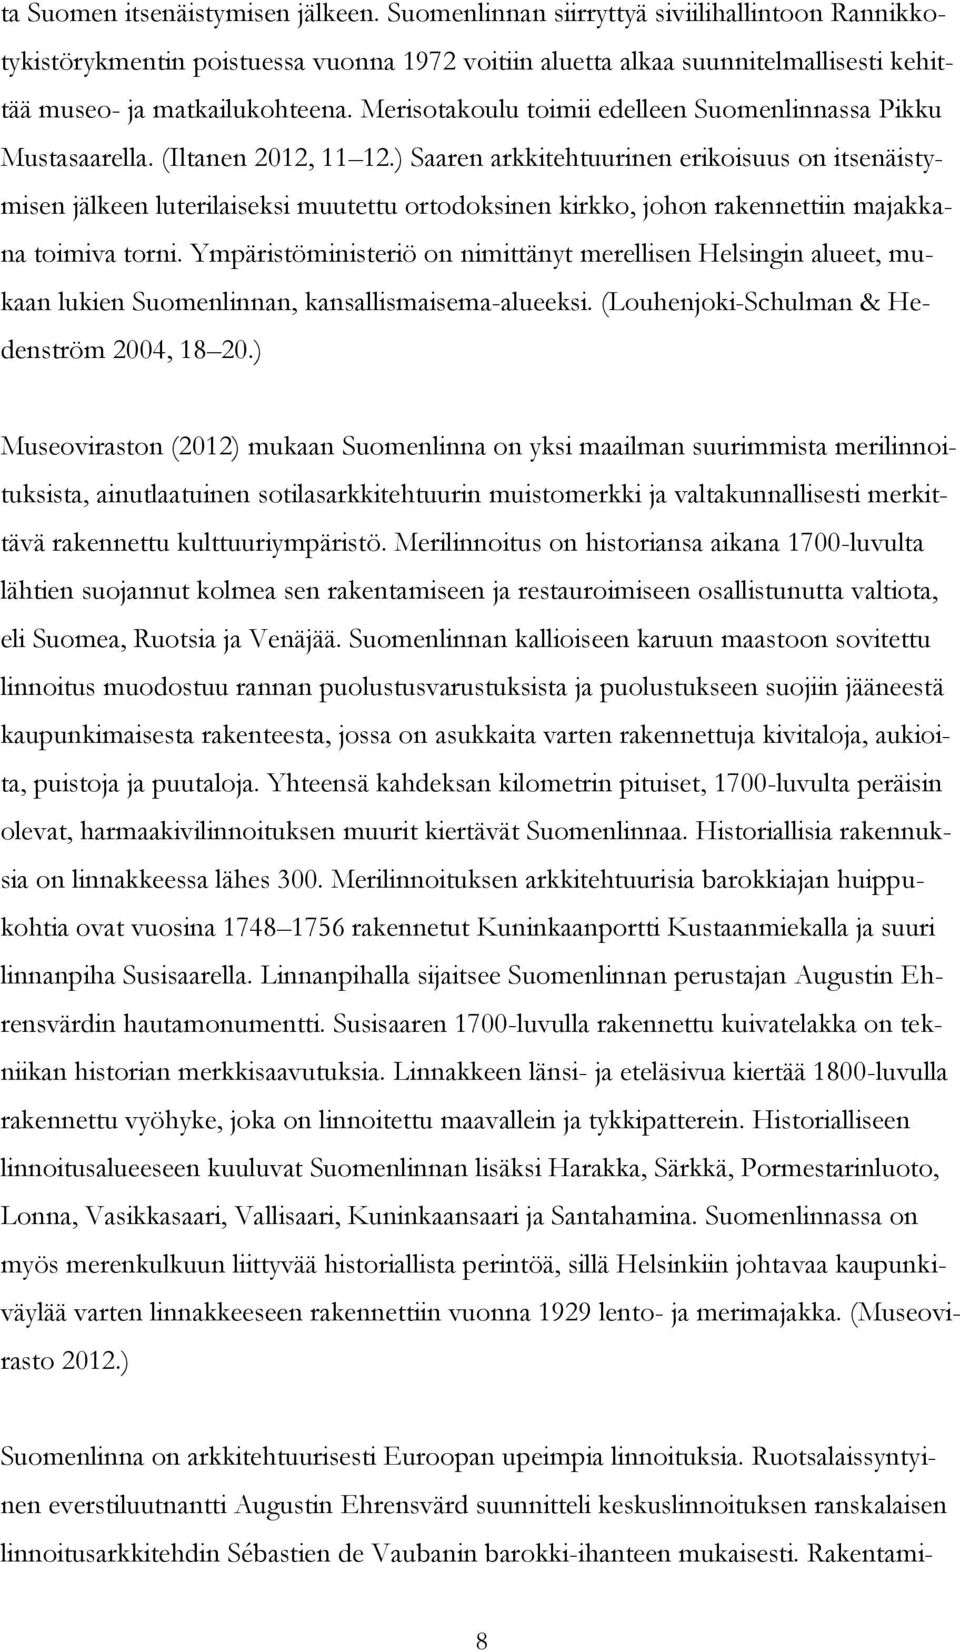 Merisotakoulu toimii edelleen Suomenlinnassa Pikku Mustasaarella. (Iltanen 2012, 11 12.